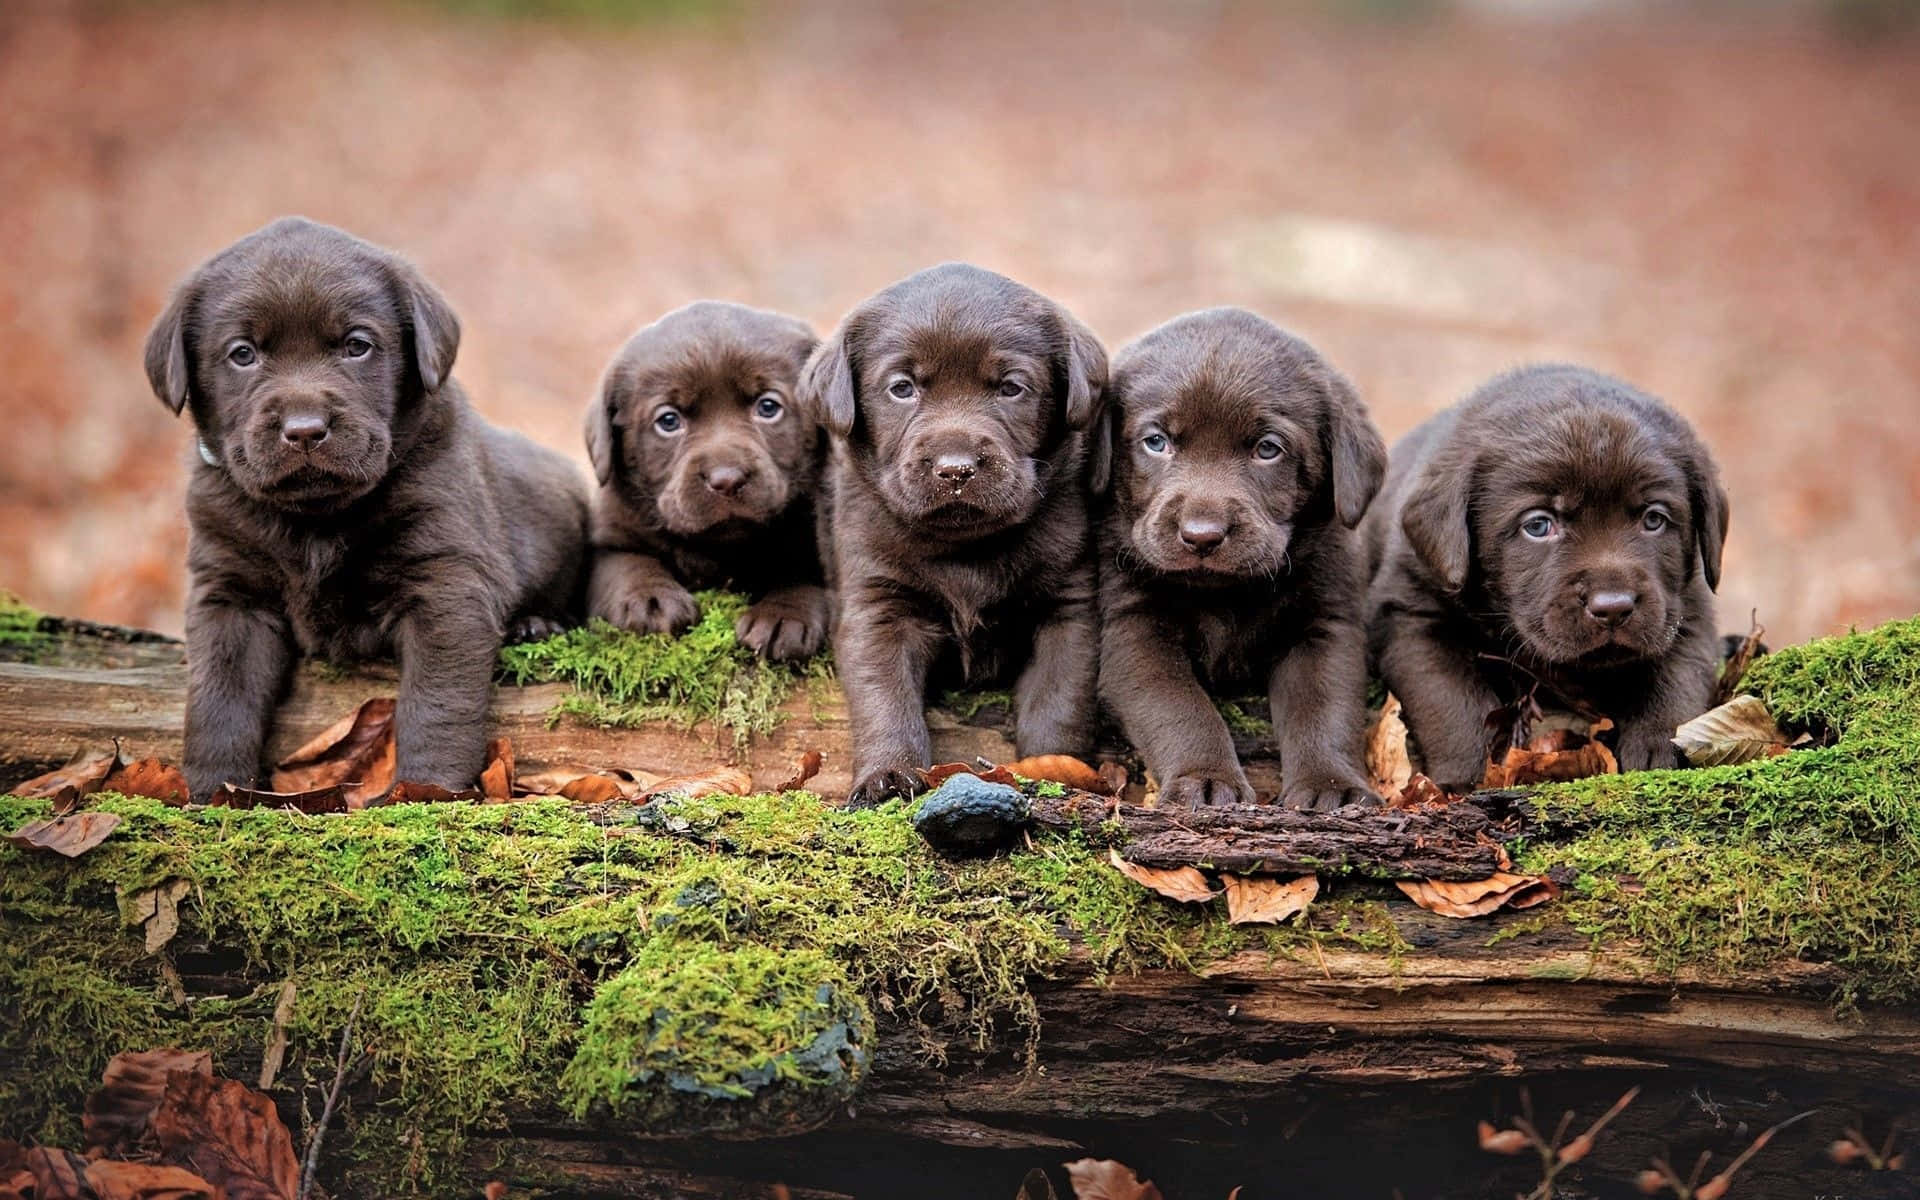 Fotode Cachorros De Labrador Negro En Un Árbol